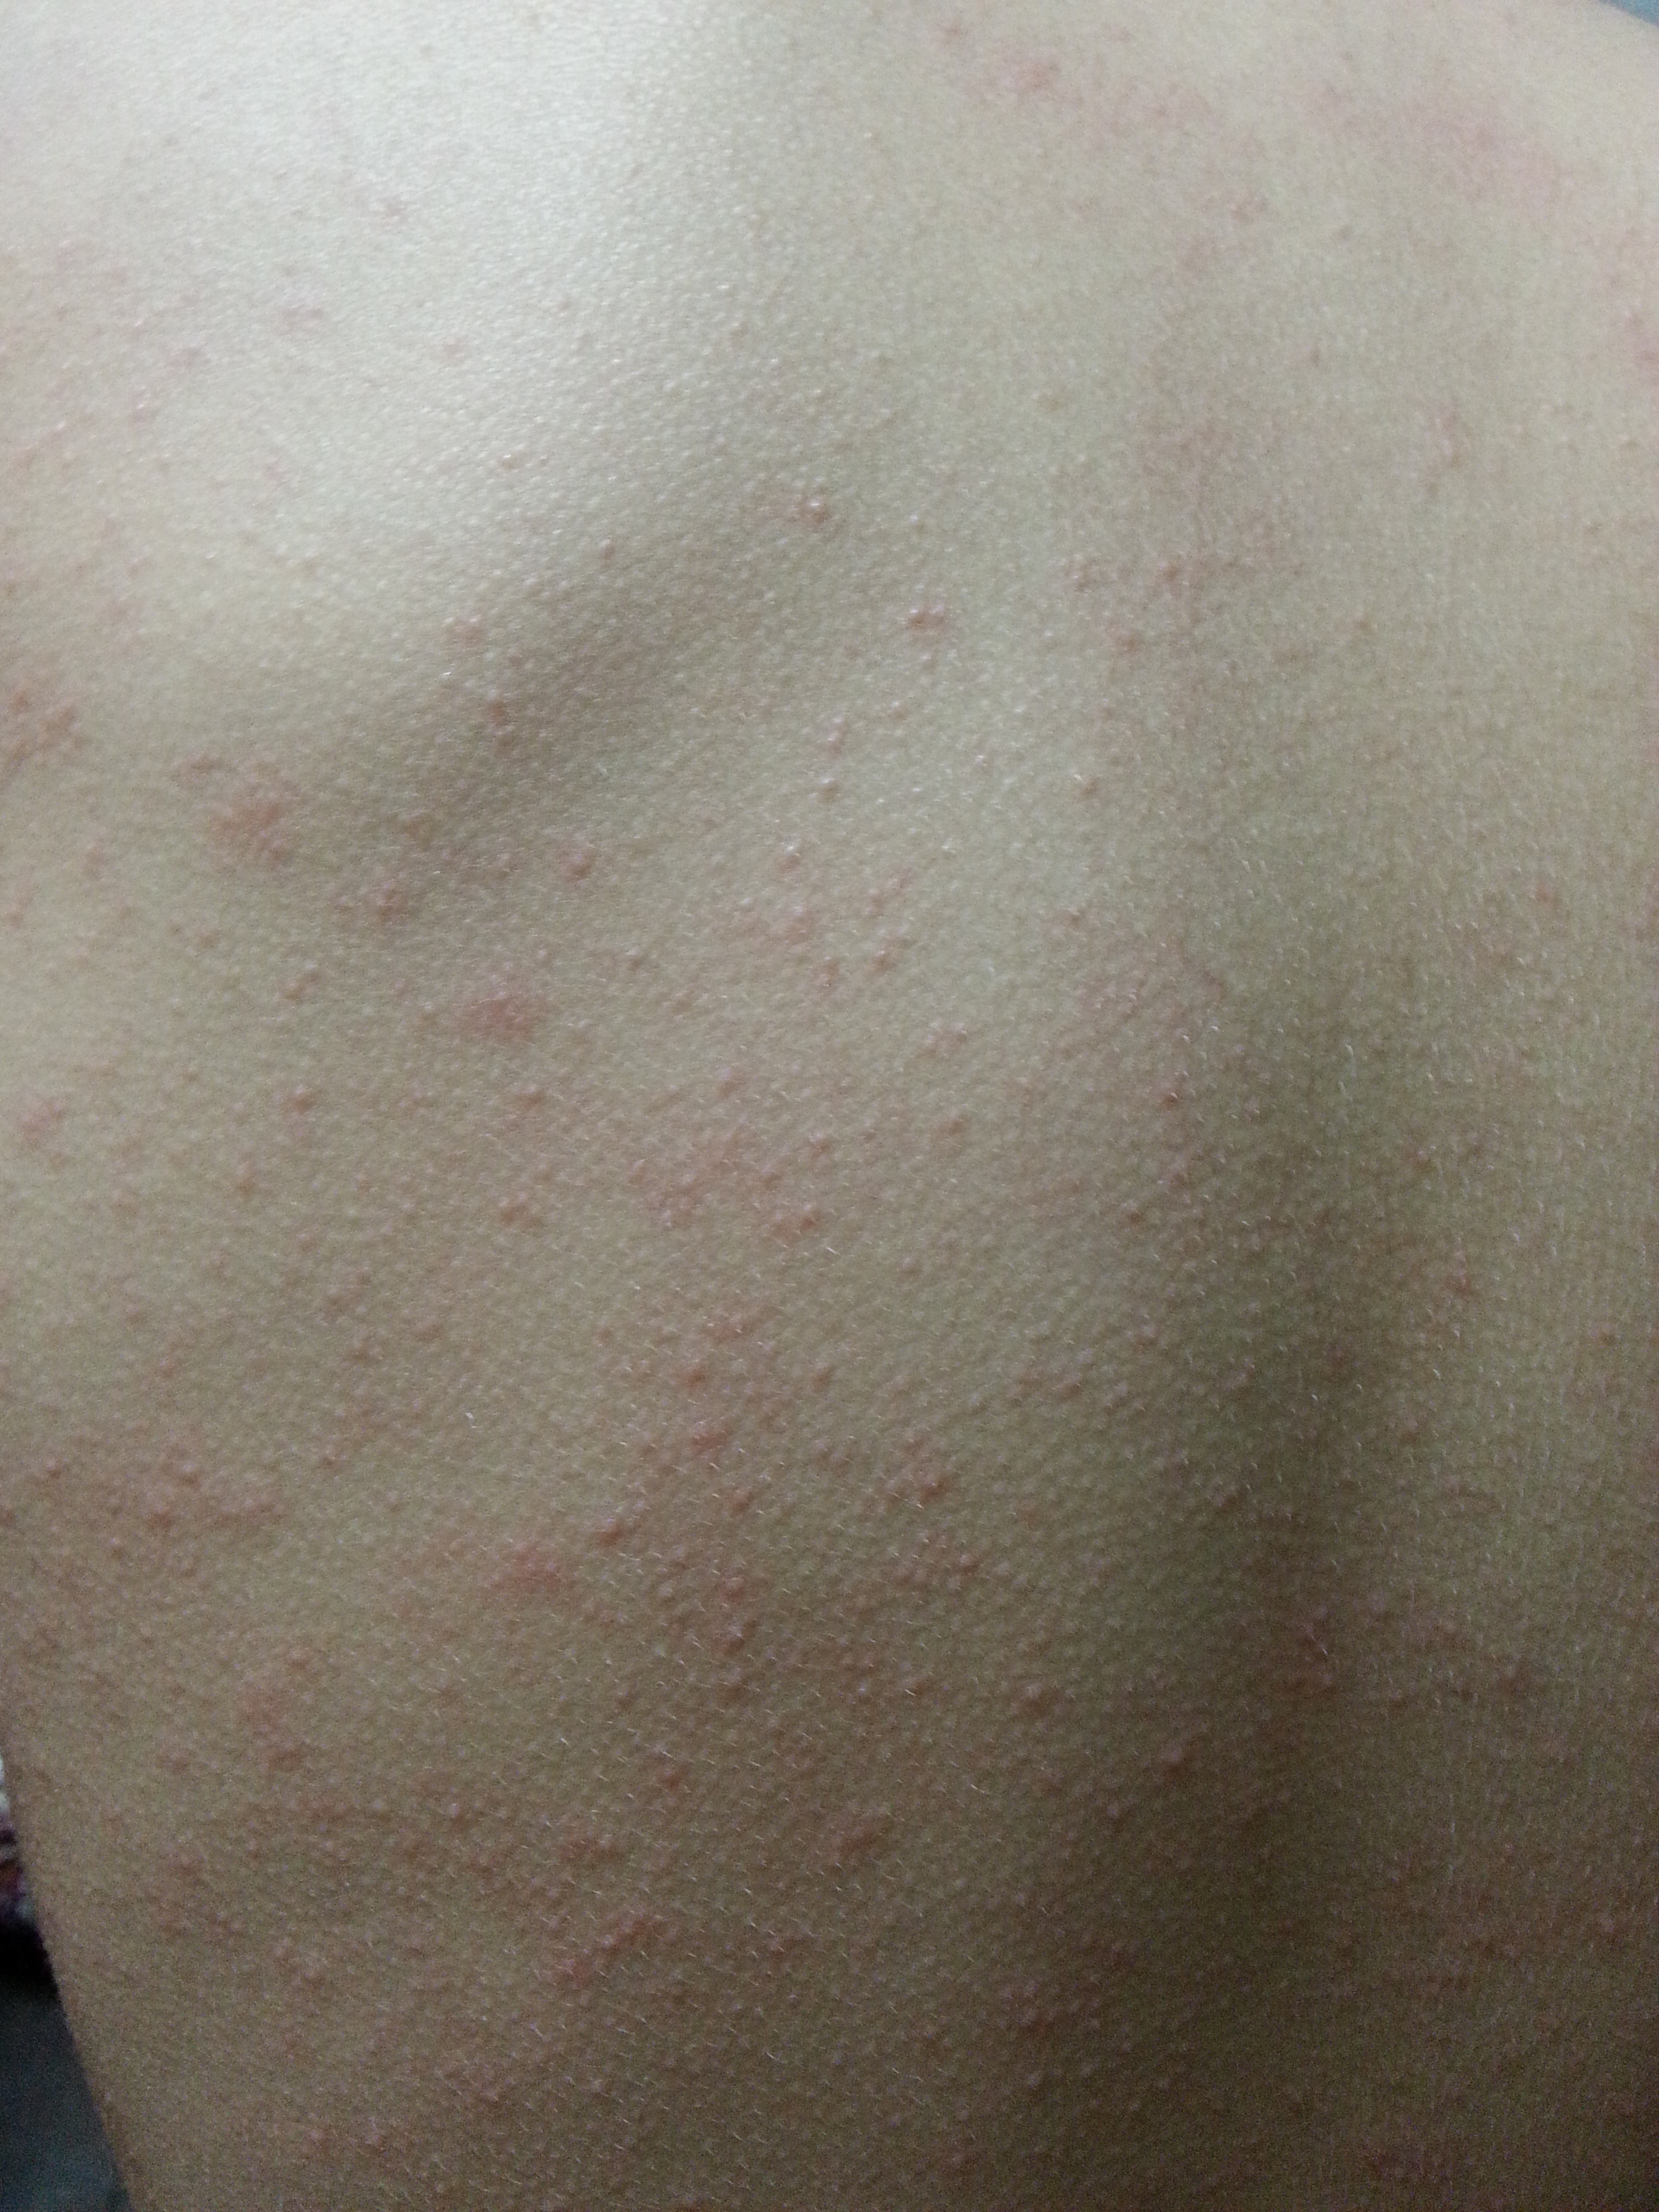 子供の発疹が全身にあるけど熱はない 赤いぶつぶつは溶連菌 分からないこと みんなで調べれば怖くない